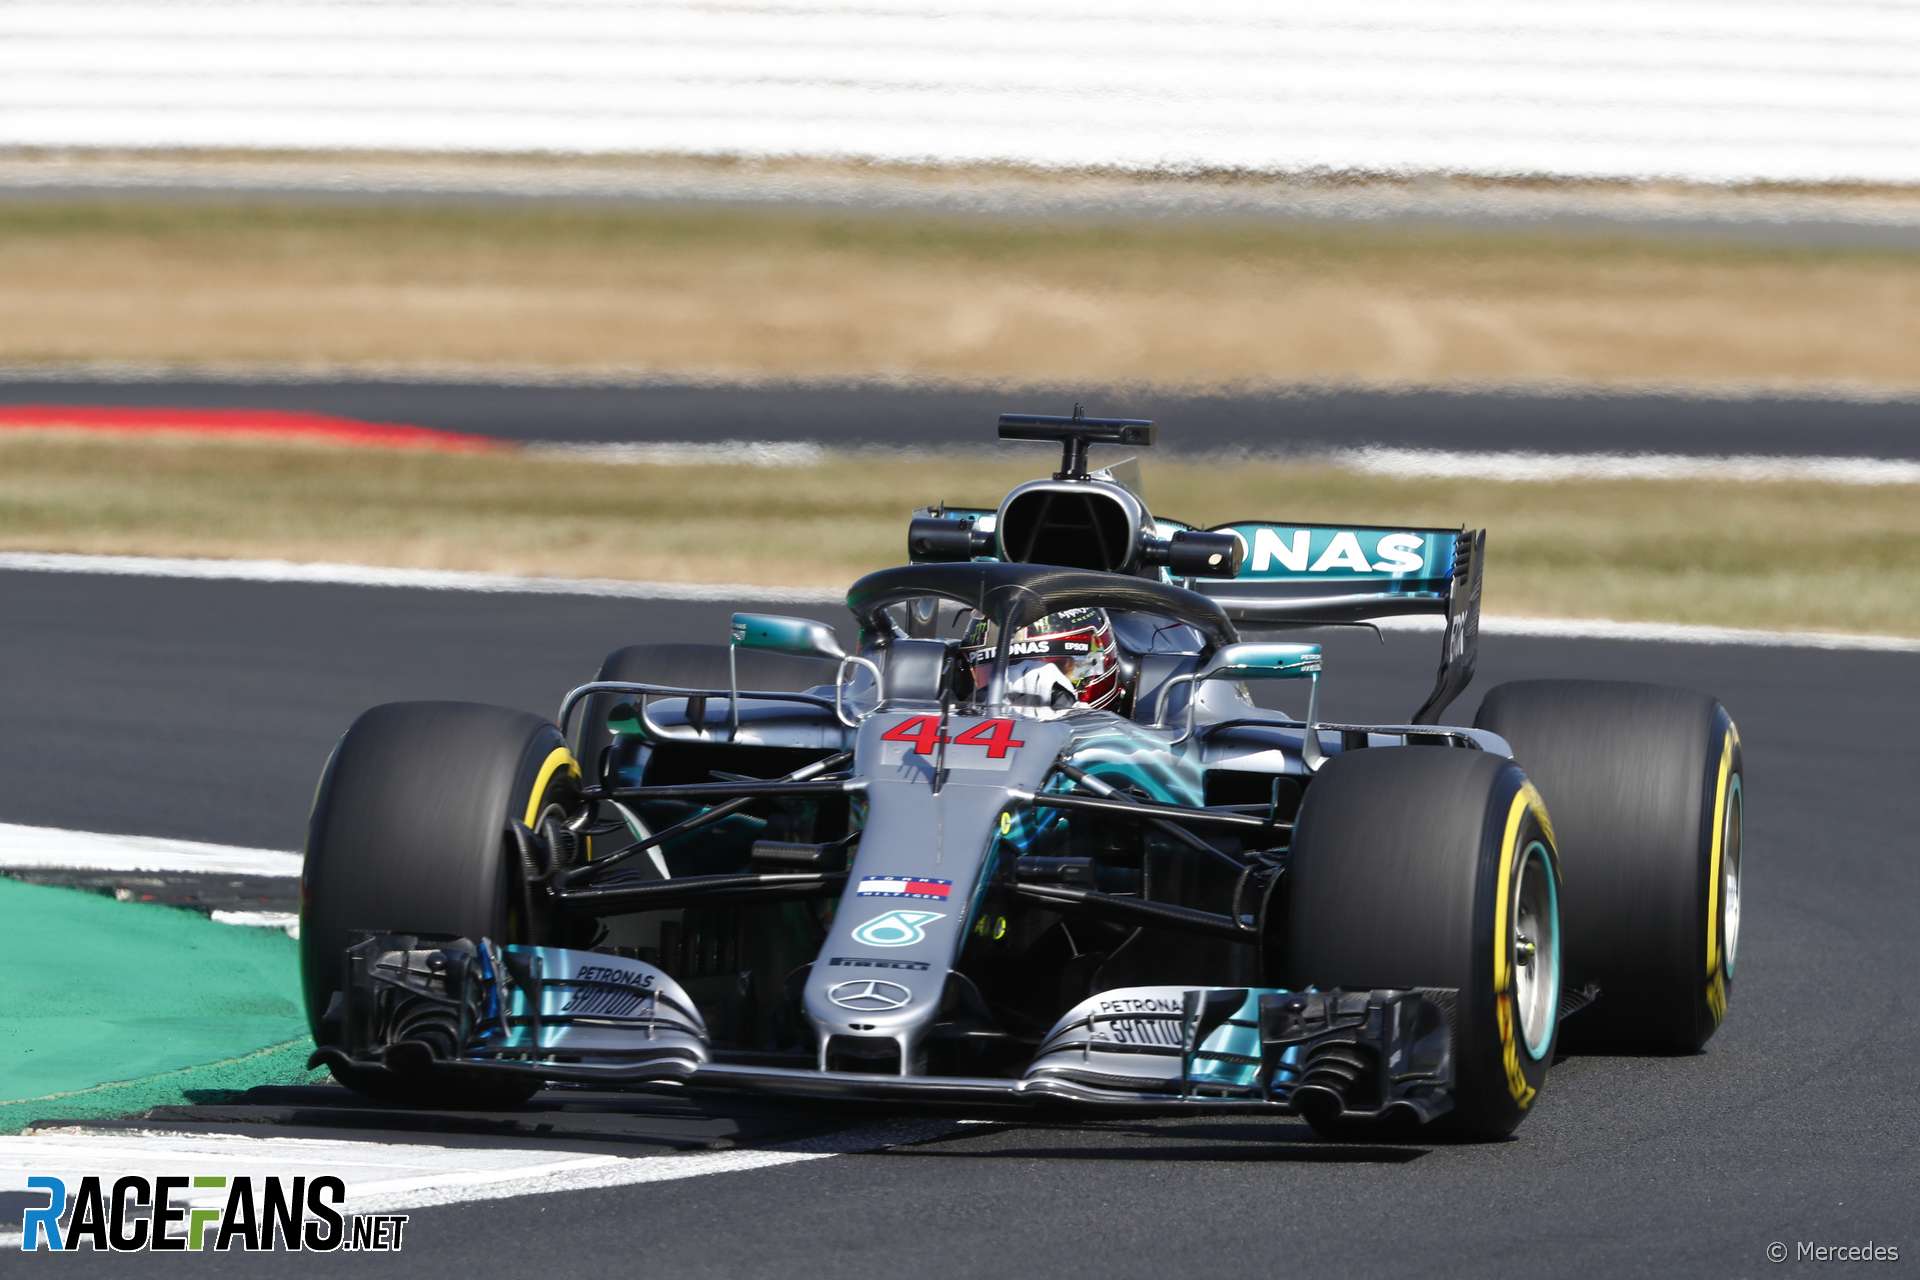 Lewis Hamilton, Mercedes, Silverstone, 2018